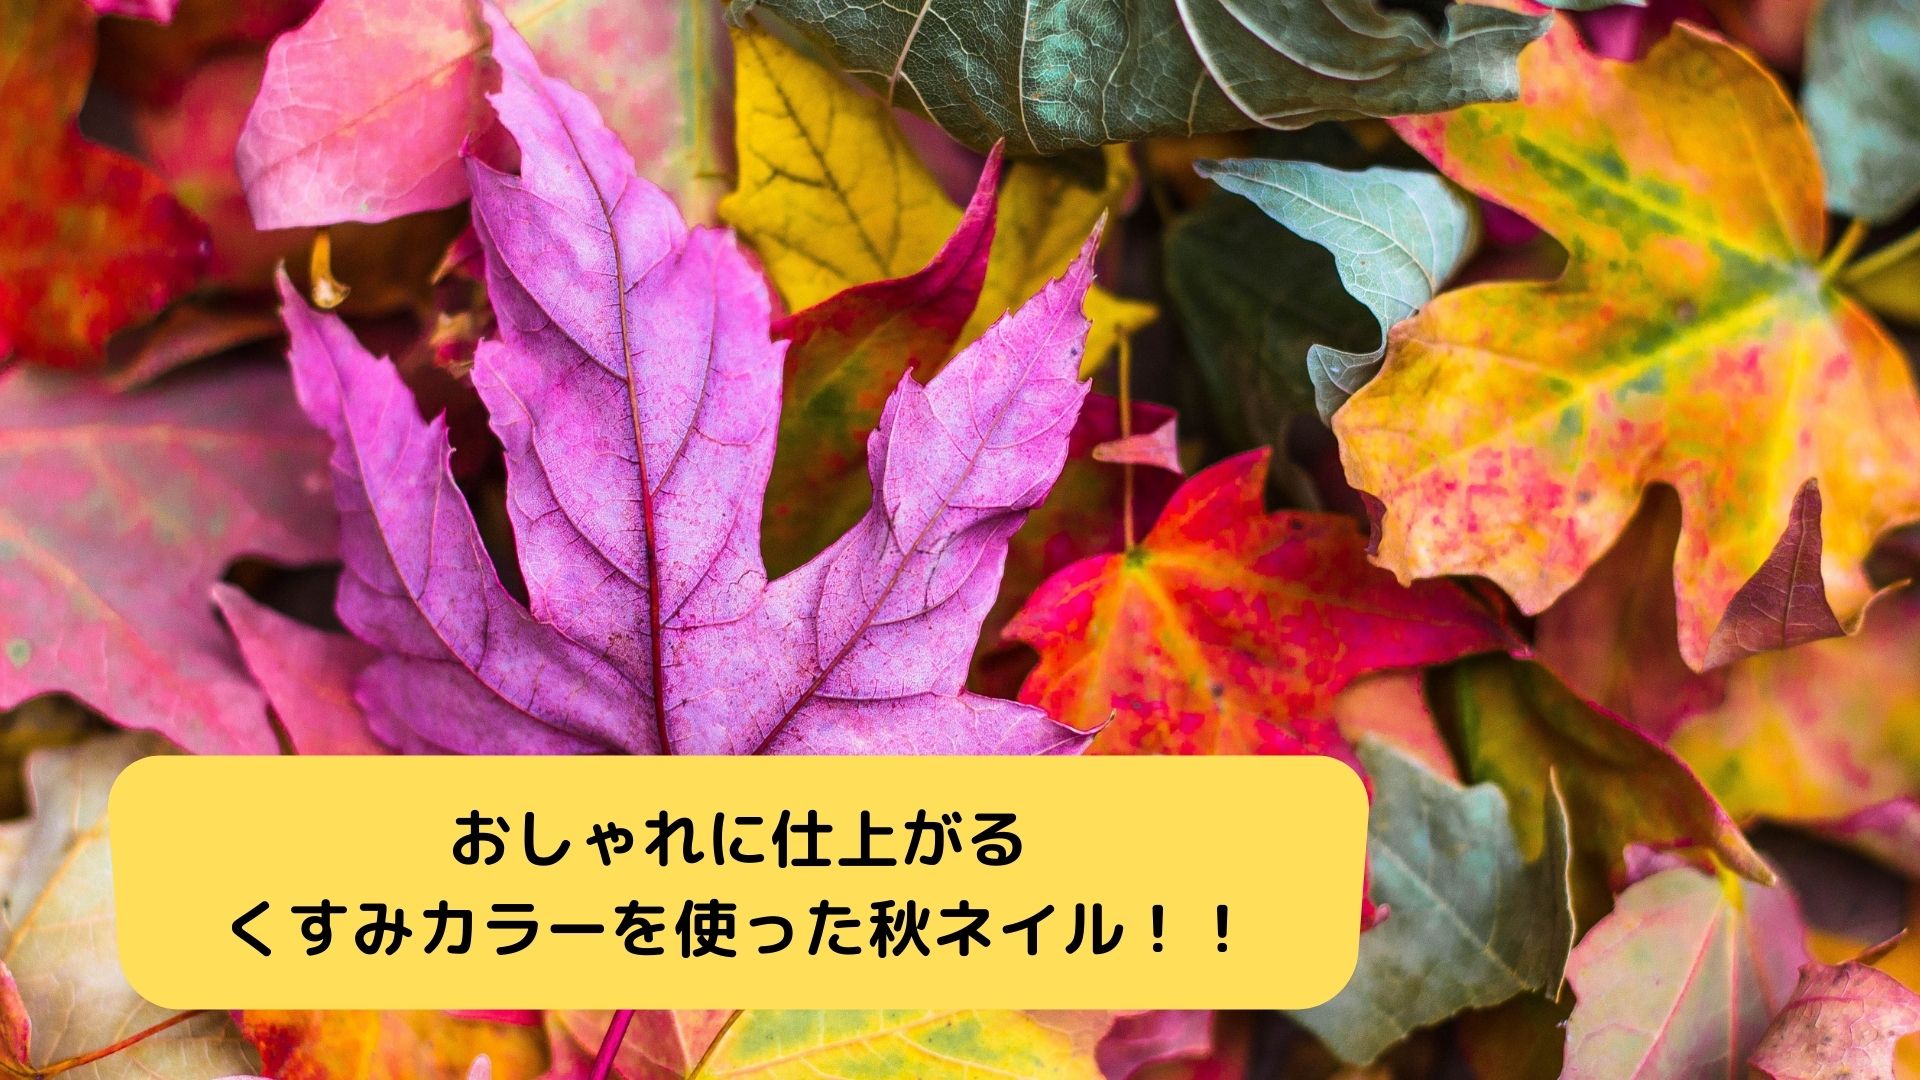 おしゃれに仕上がるくすみカラーを使った秋ネイル 四国 香川県のネイル集客 スクール アドザバイザ コンシェルジュ